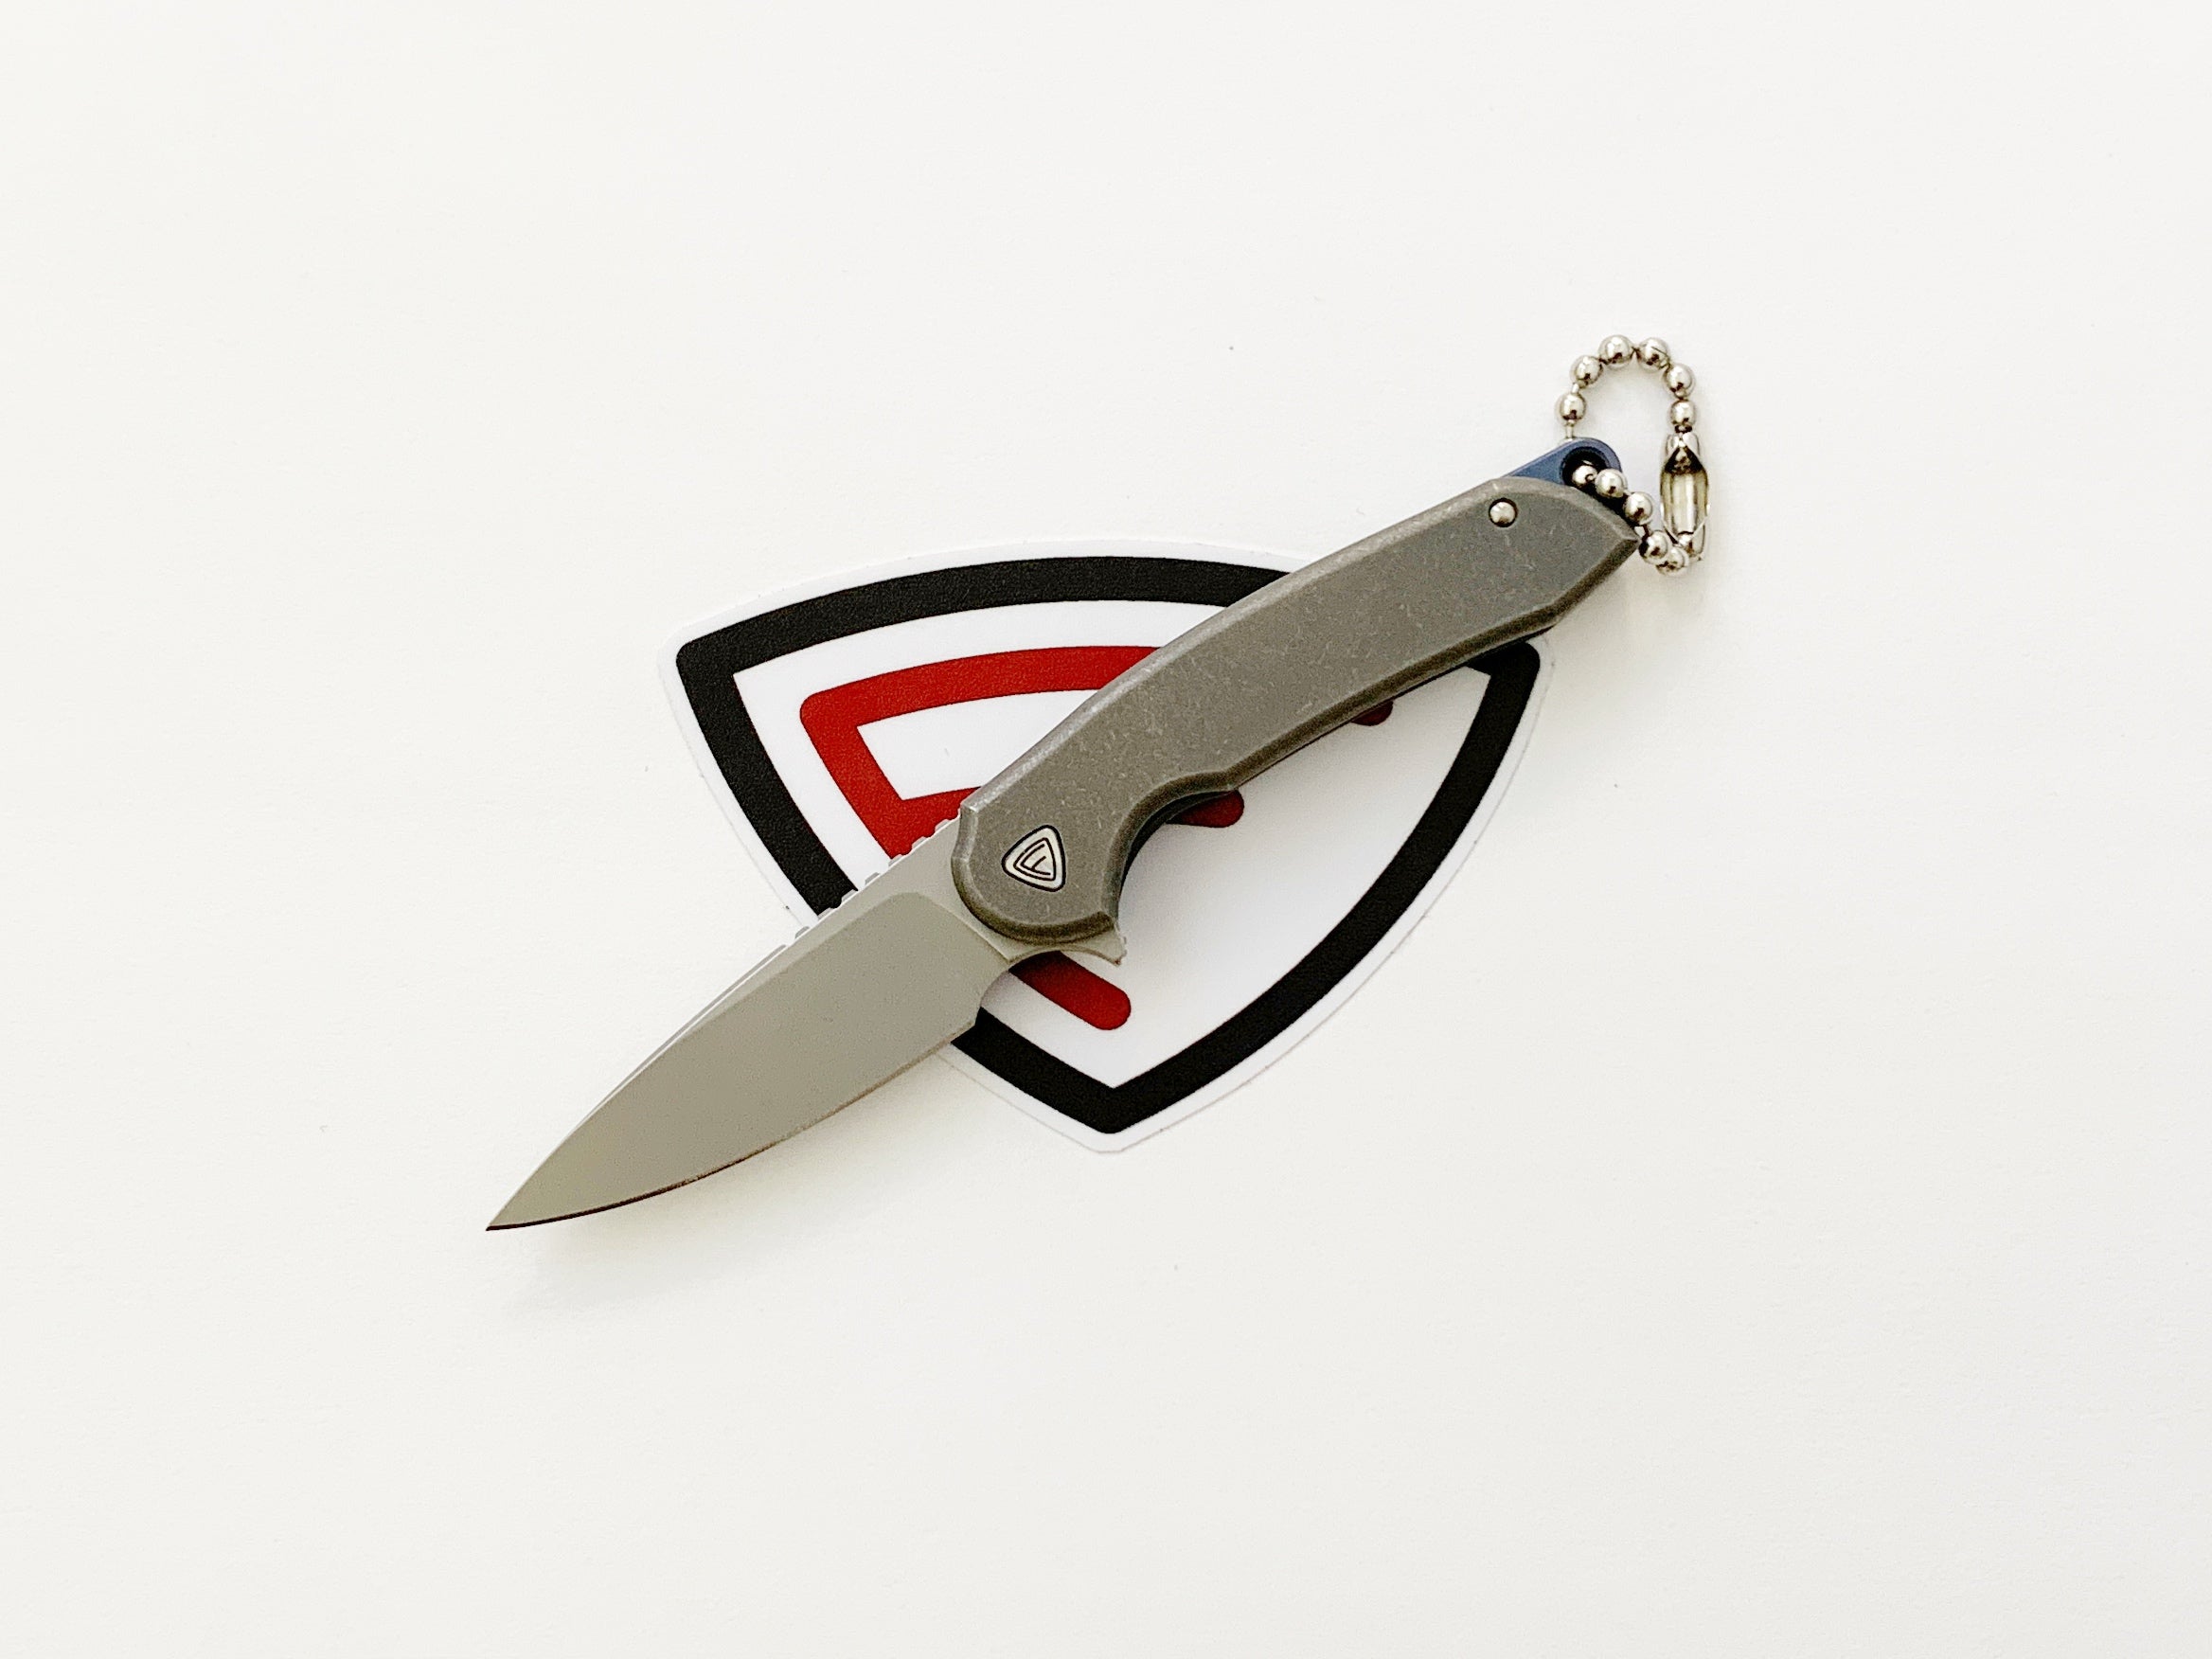 Ferrum Forge Stinger - Liner Lock Knife, Black G-10